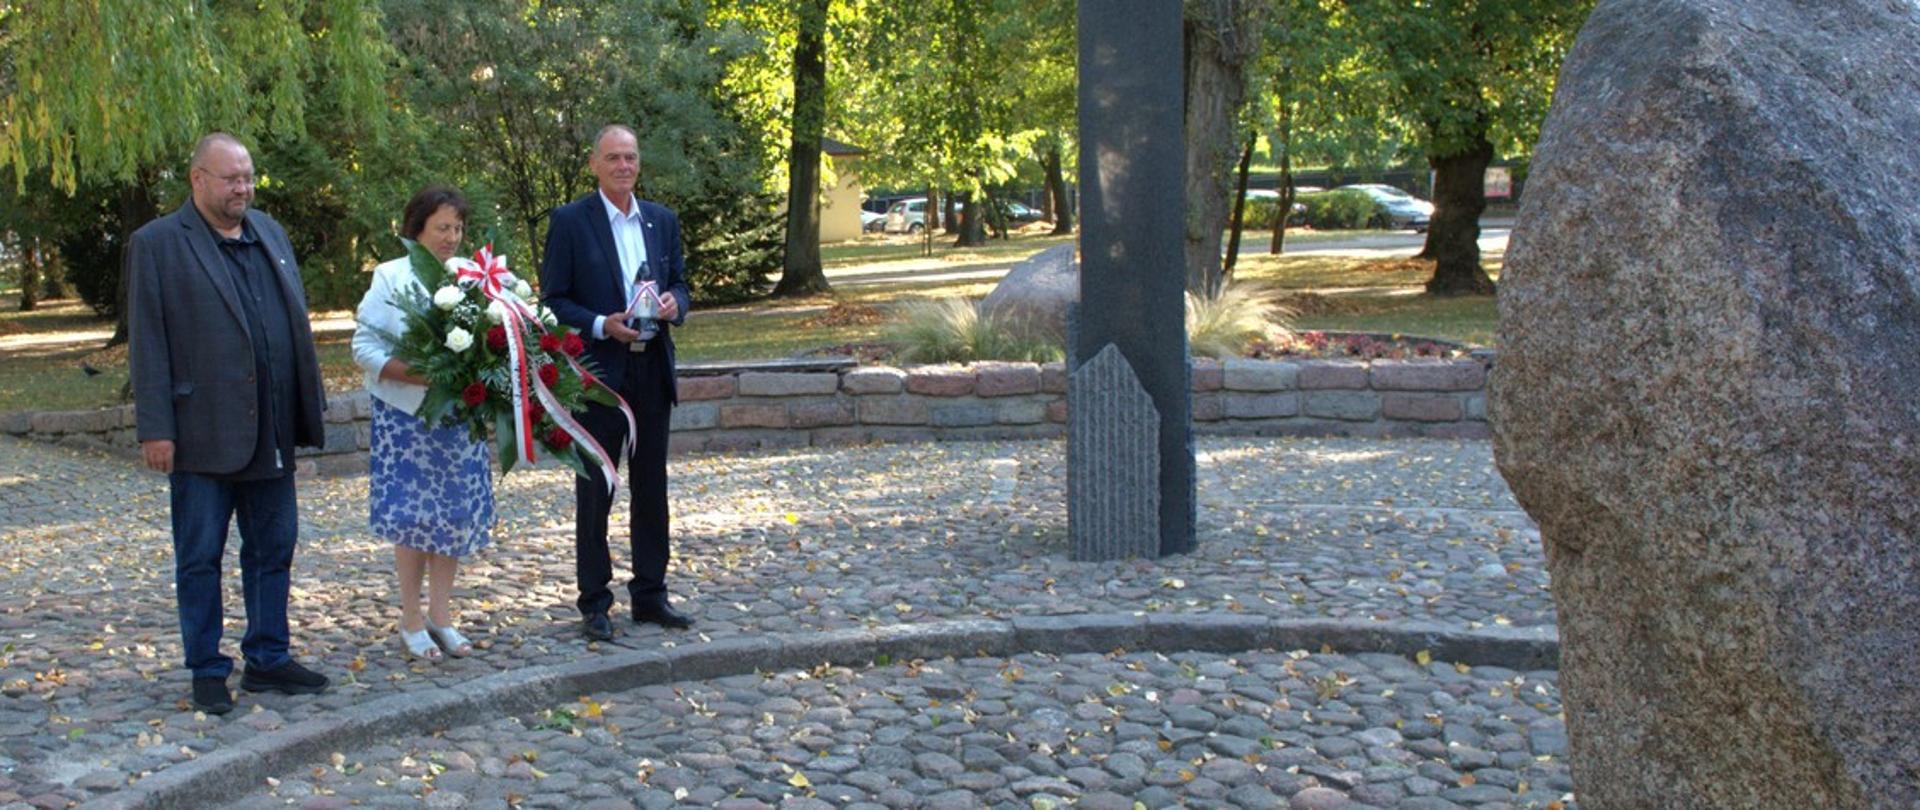 Na zdjęciu widać delegację powiatu sokołowskiego, która zmierza w kierunku centralnej części pomnika "Czynu Niepodległościowego", który stanowi przecięty poprzecznie na pół owalny głaz z napisem Bóg, Honor, Ojczyzna. W tle park Adama Mickiewicza w Sokołowie Podlaskim.